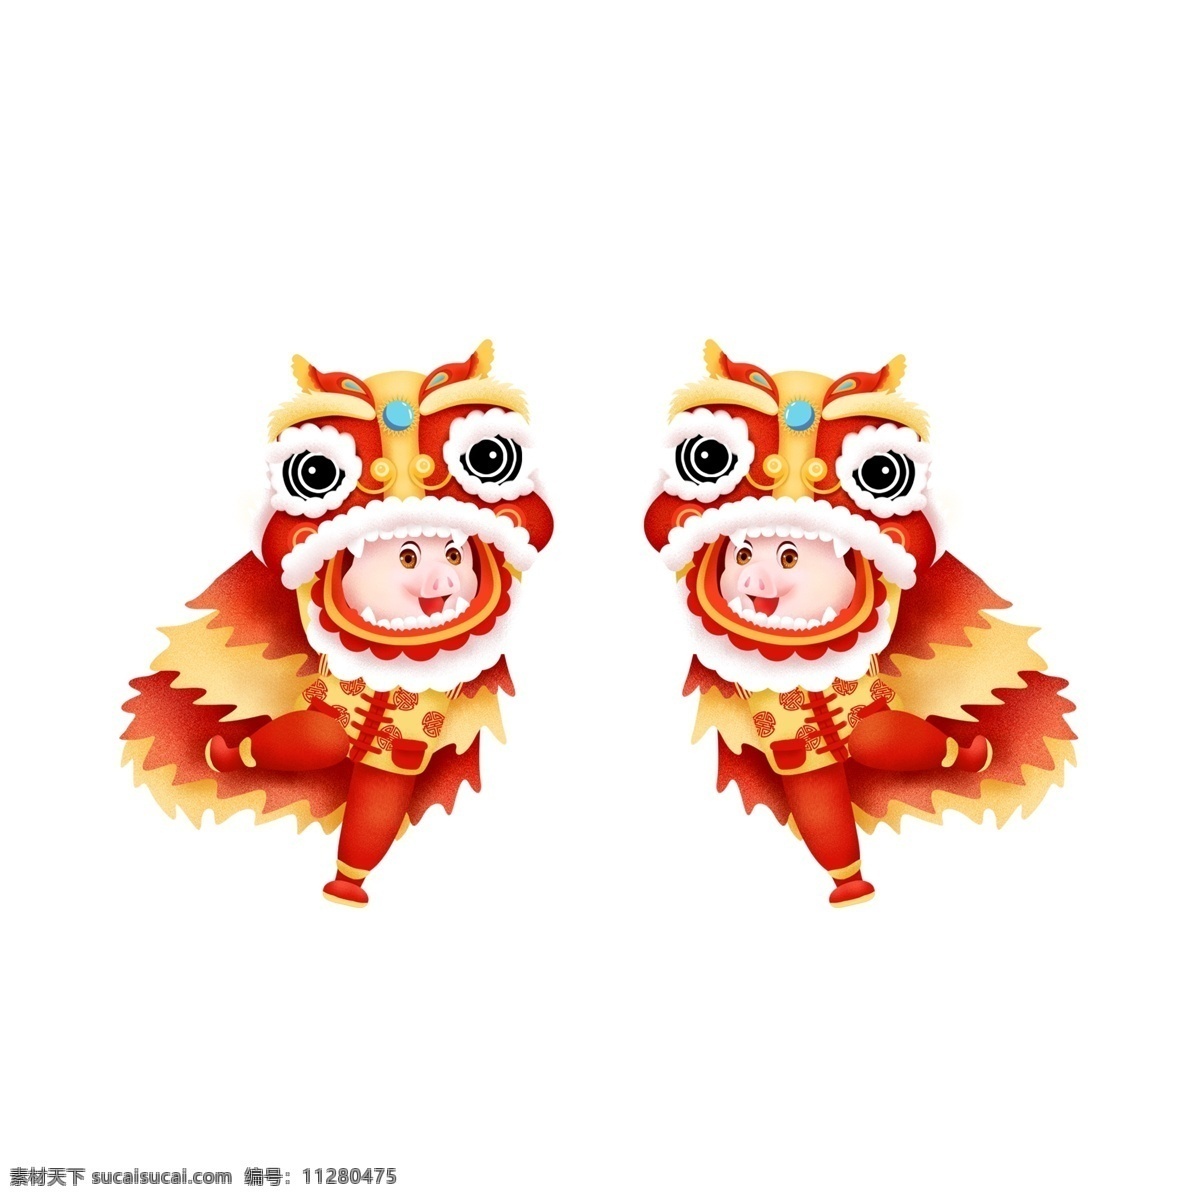 喜庆 2019 猪年 传统 舞狮 元素 新年元素 装饰图案 新年 猪年元素 手绘图案 元素装饰 元素设计 创意元素 手绘元素 psd元素